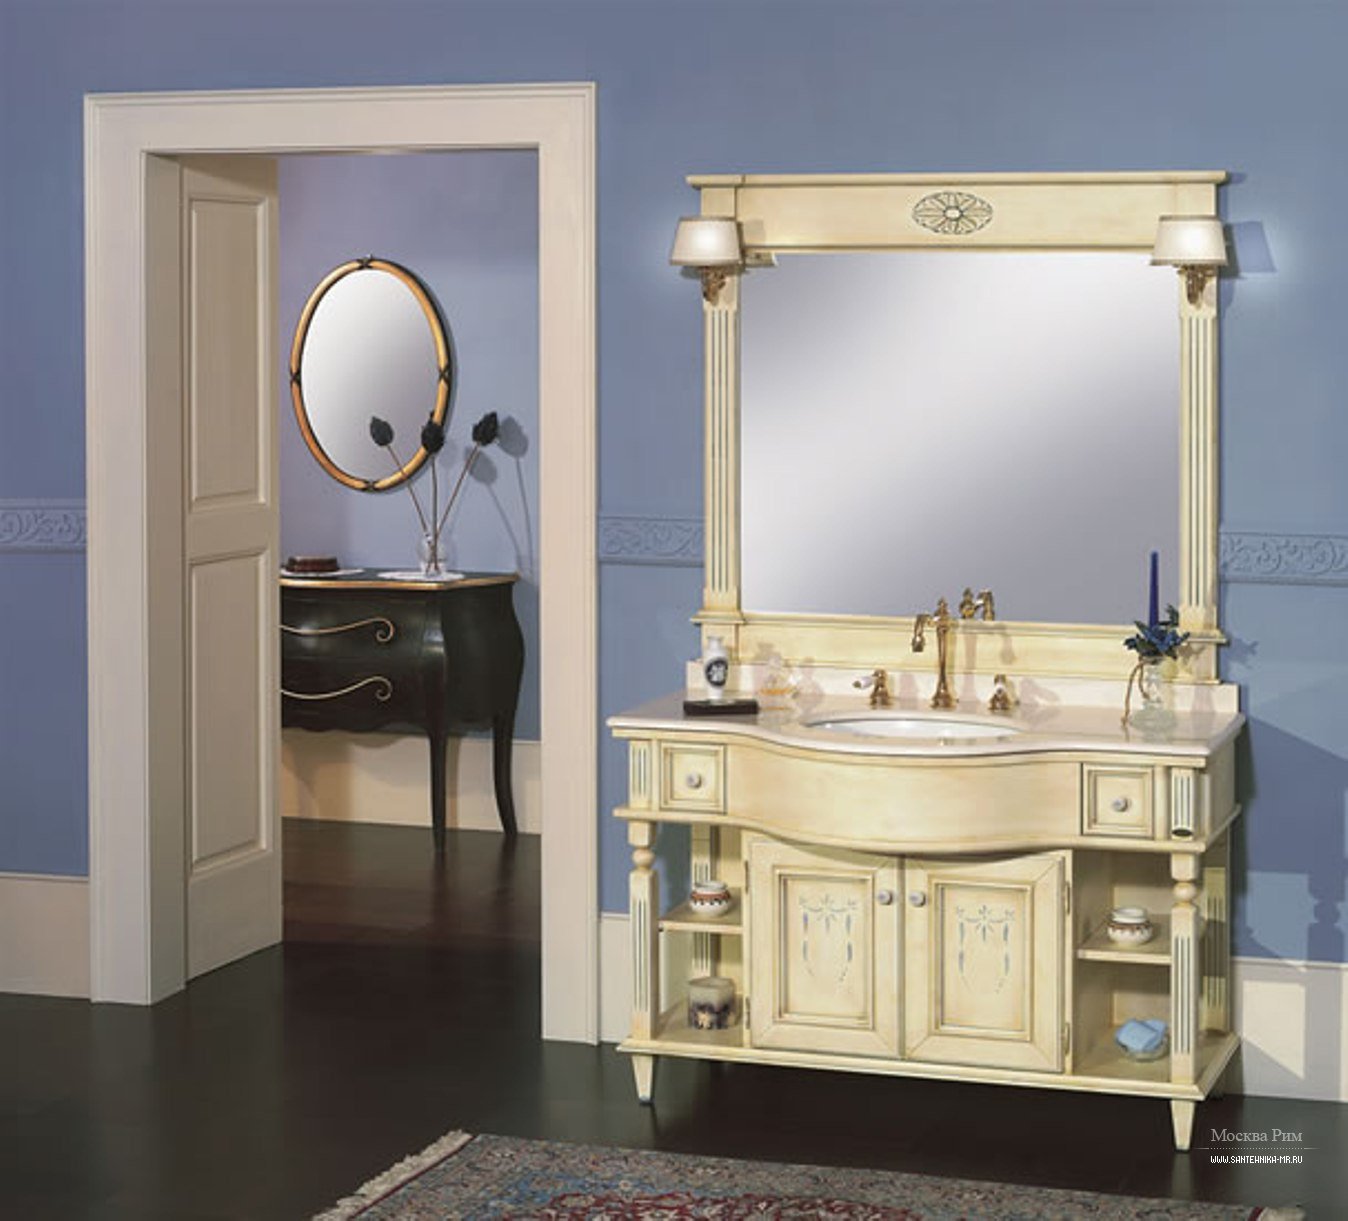 Мебель для ванны италия. Мебель для ванной комнаты Миглиоре. Итальянская сантехника Миглиоре. Capri3 мебель для ванной epoque. Мебель для ванной комнаты классика.